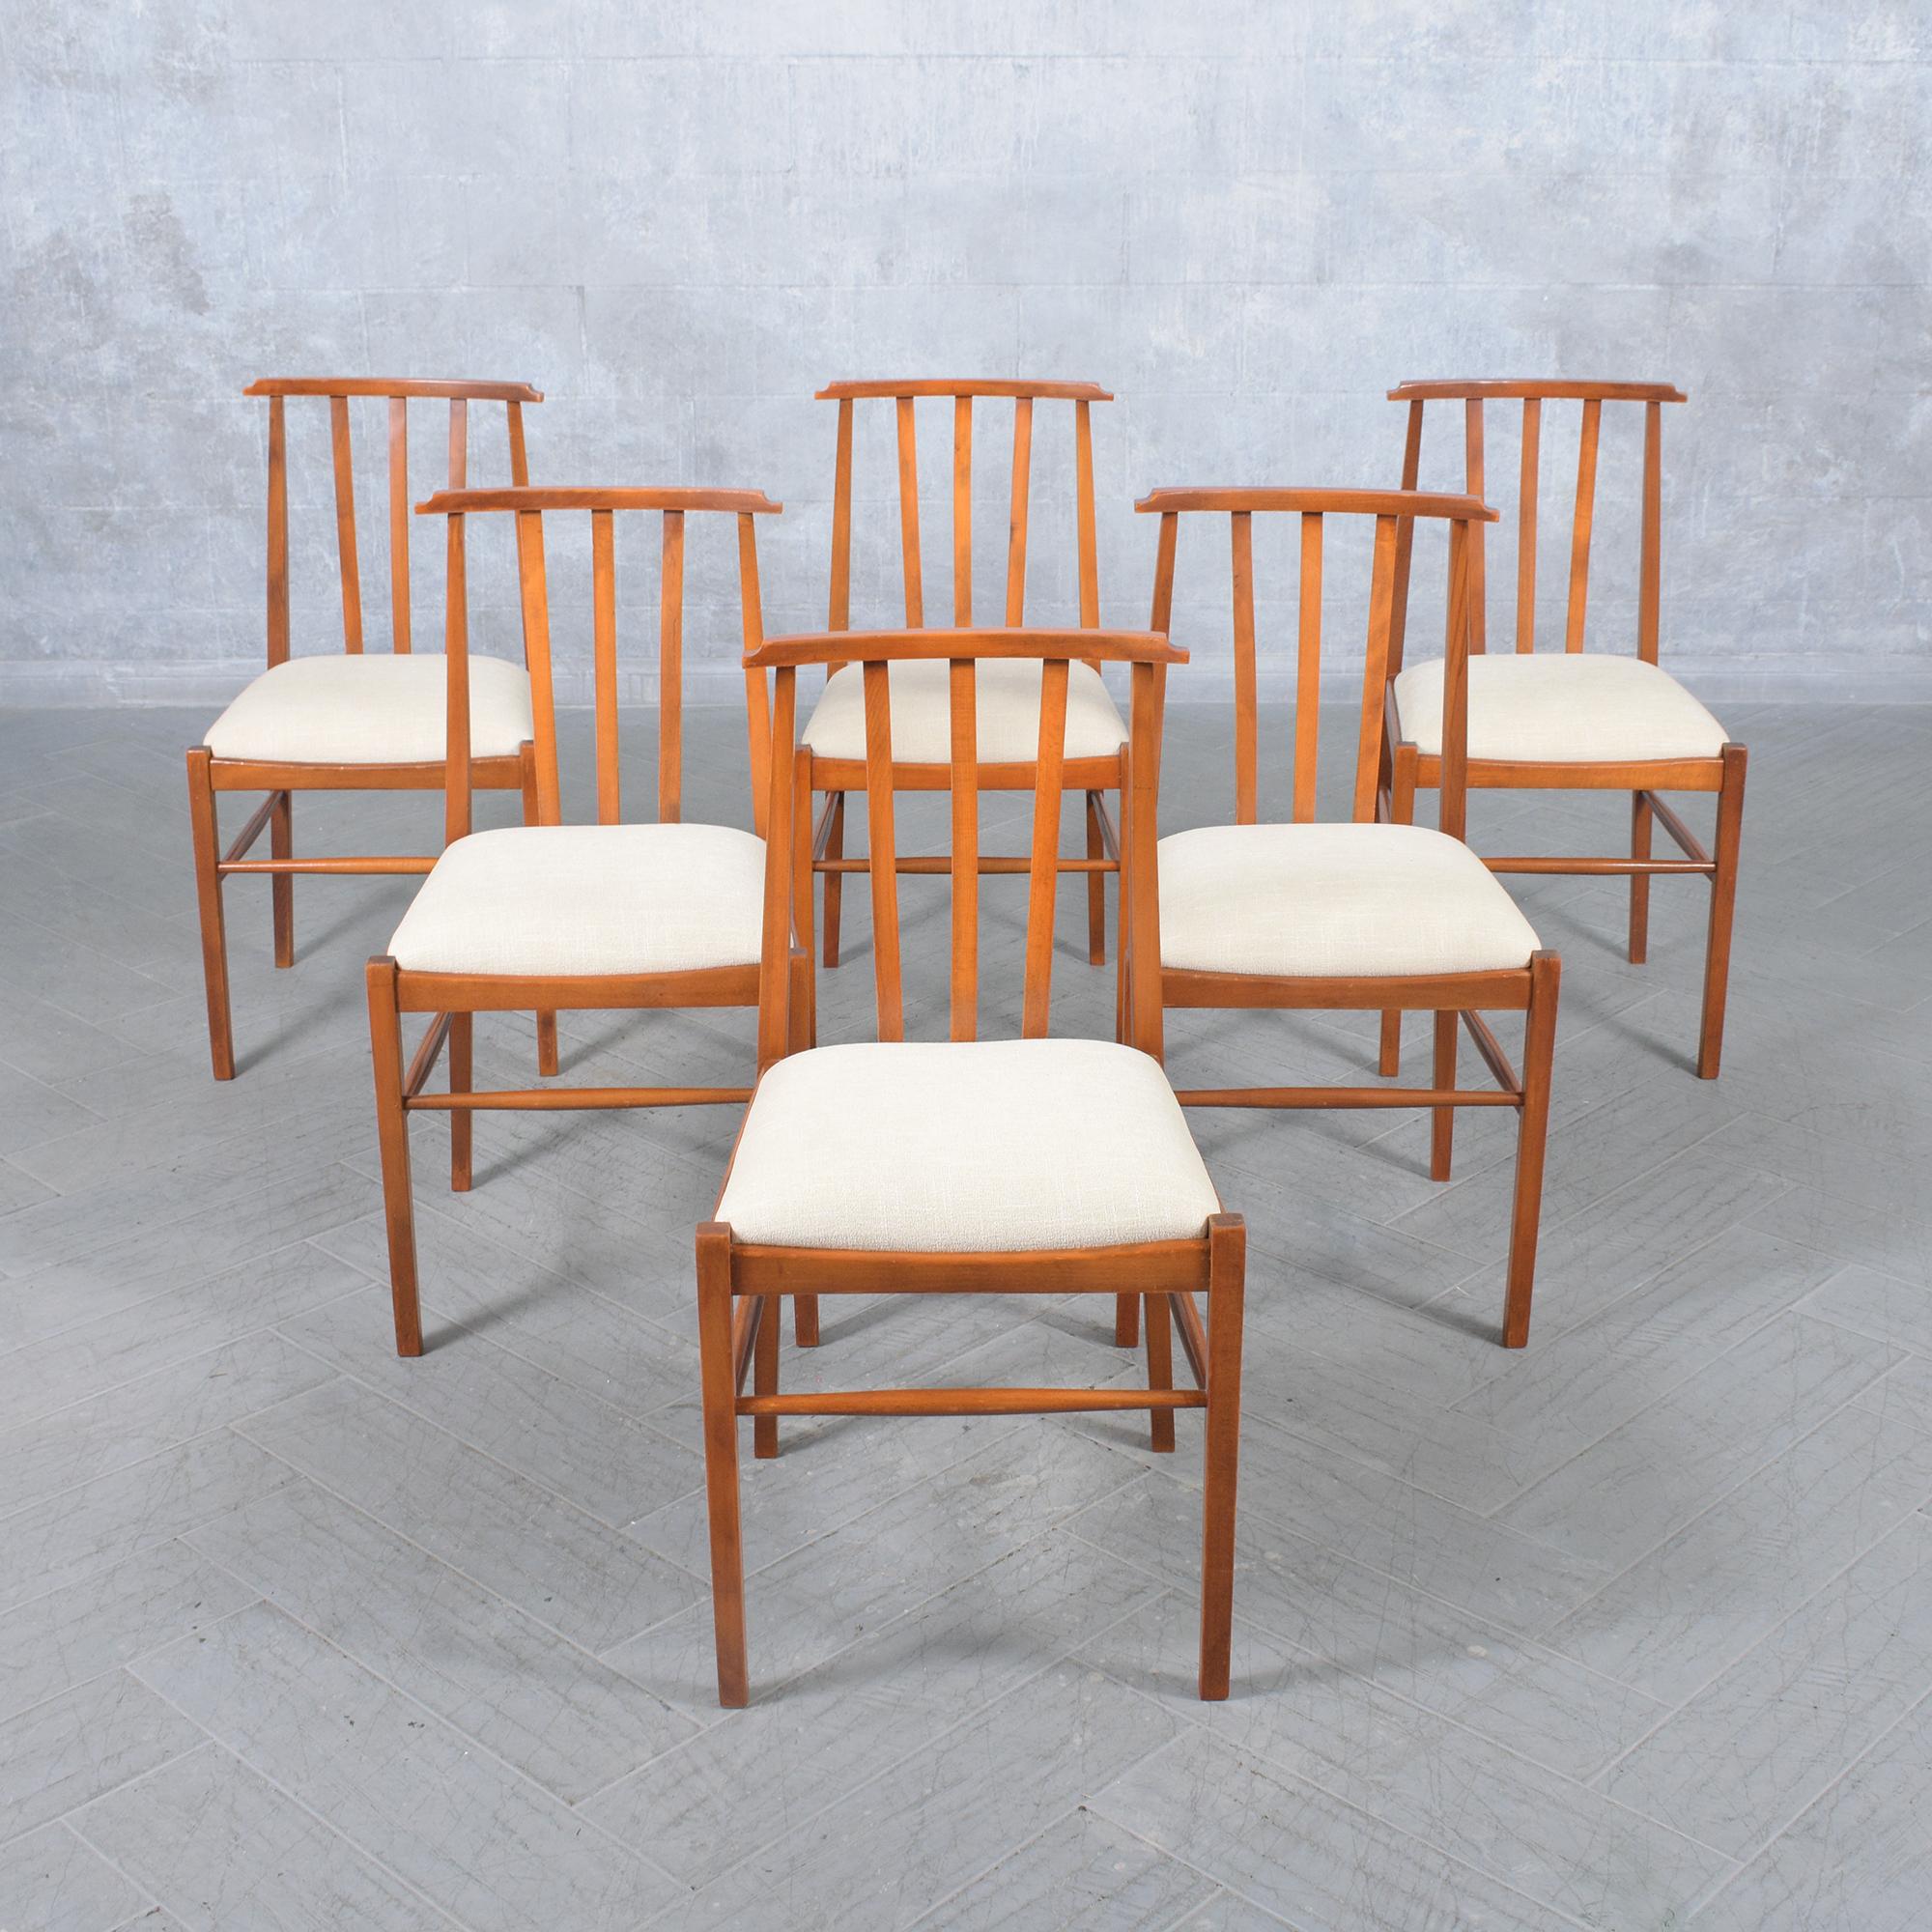 Entdecken Sie unsere sorgfältig restaurierten Esszimmerstühle aus den 1960er Jahren - eine Verschmelzung von Vintage-Charme und moderner Eleganz. Jeder Stuhl dieser Collection'S verkörpert außergewöhnliche Handwerkskunst und ist aus hochwertigem,